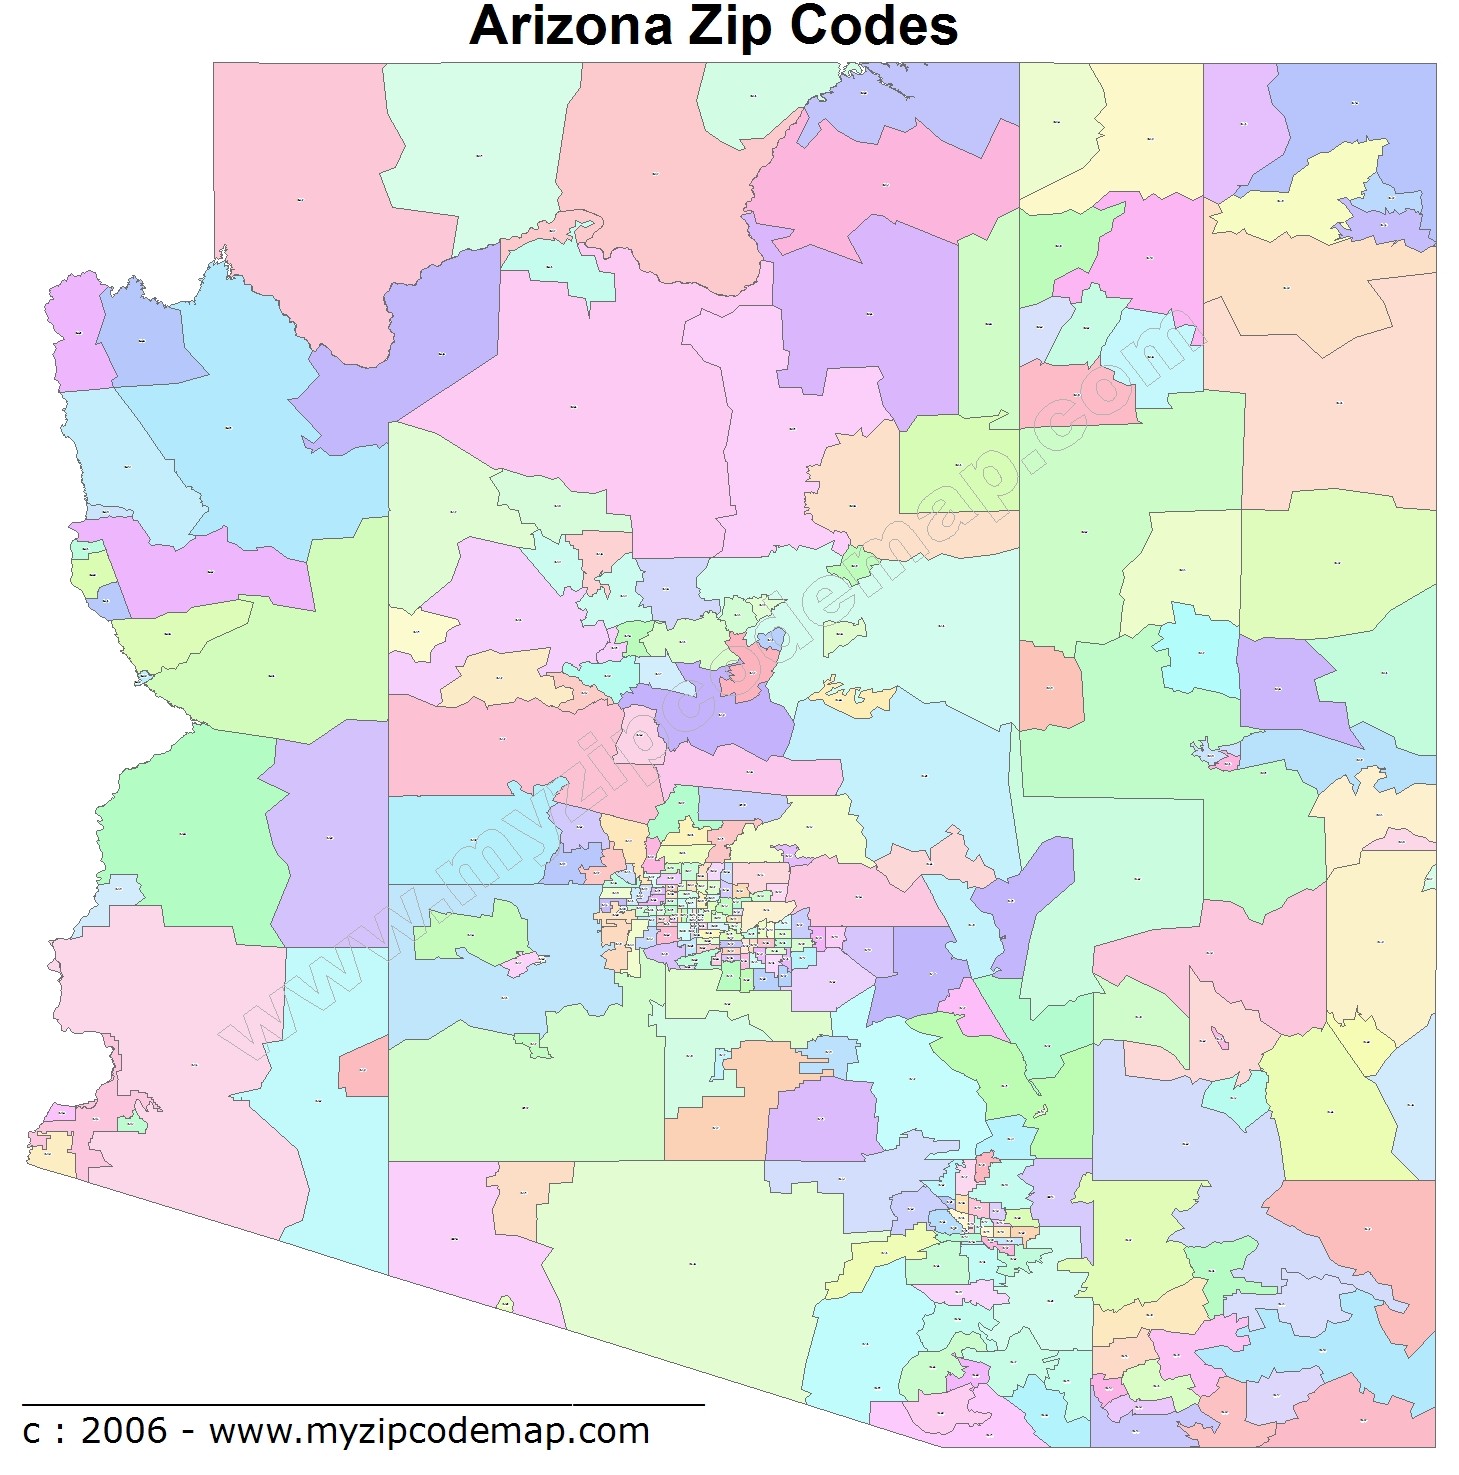 Arizona Zip Code Maps Free Arizona Zip Code Maps 1315